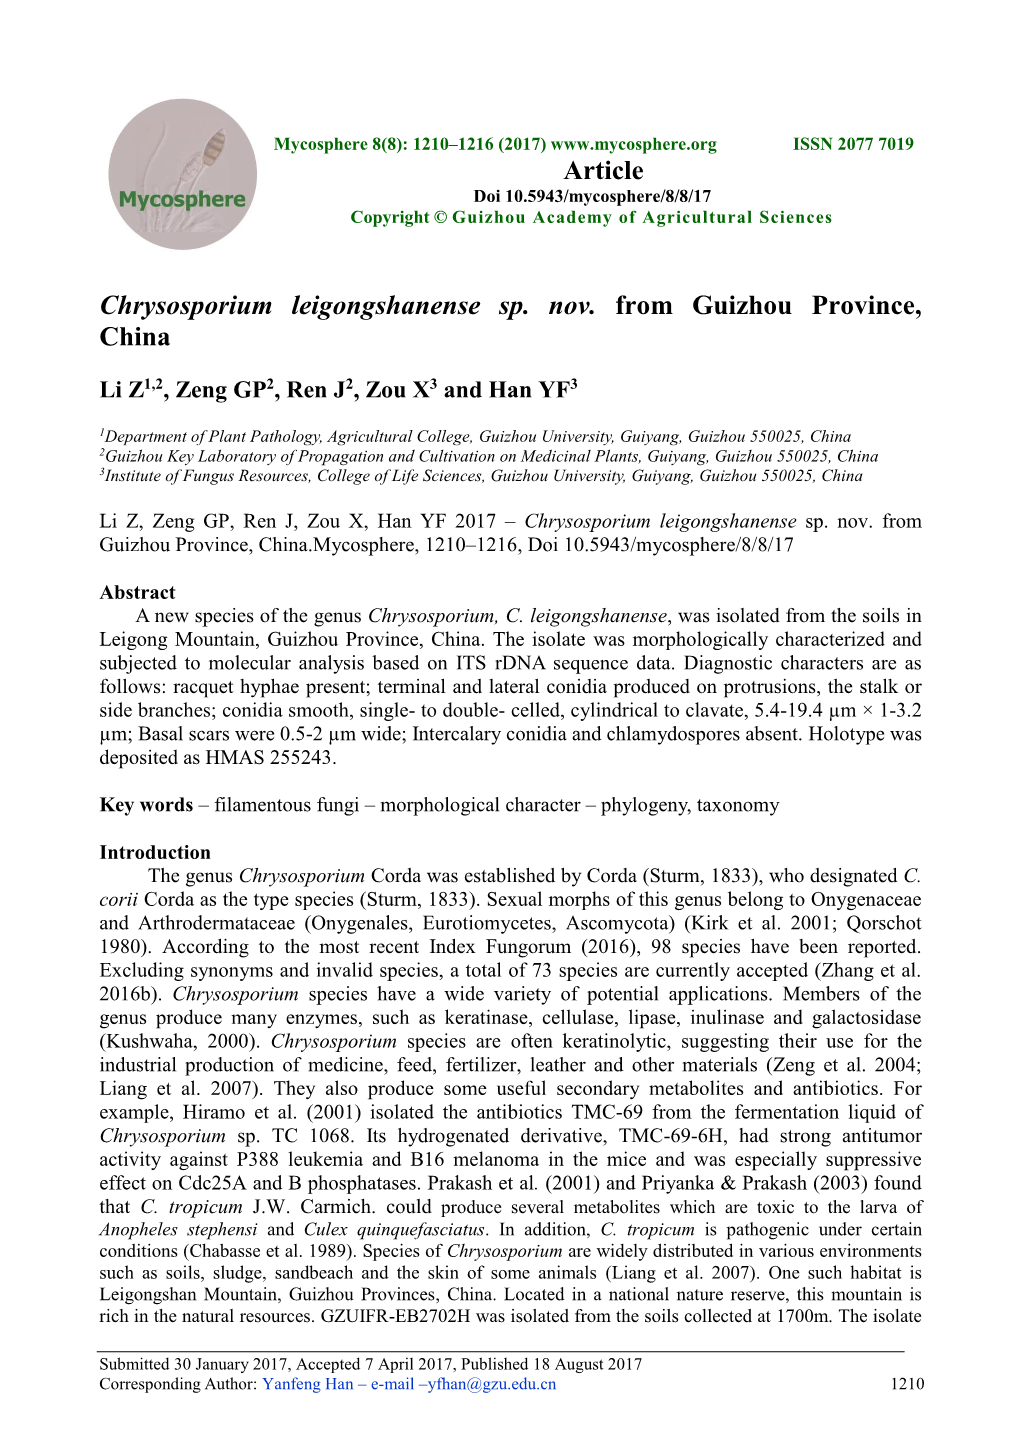 Chrysosporium Leigongshanense Sp. Nov. from Guizhou Province, China